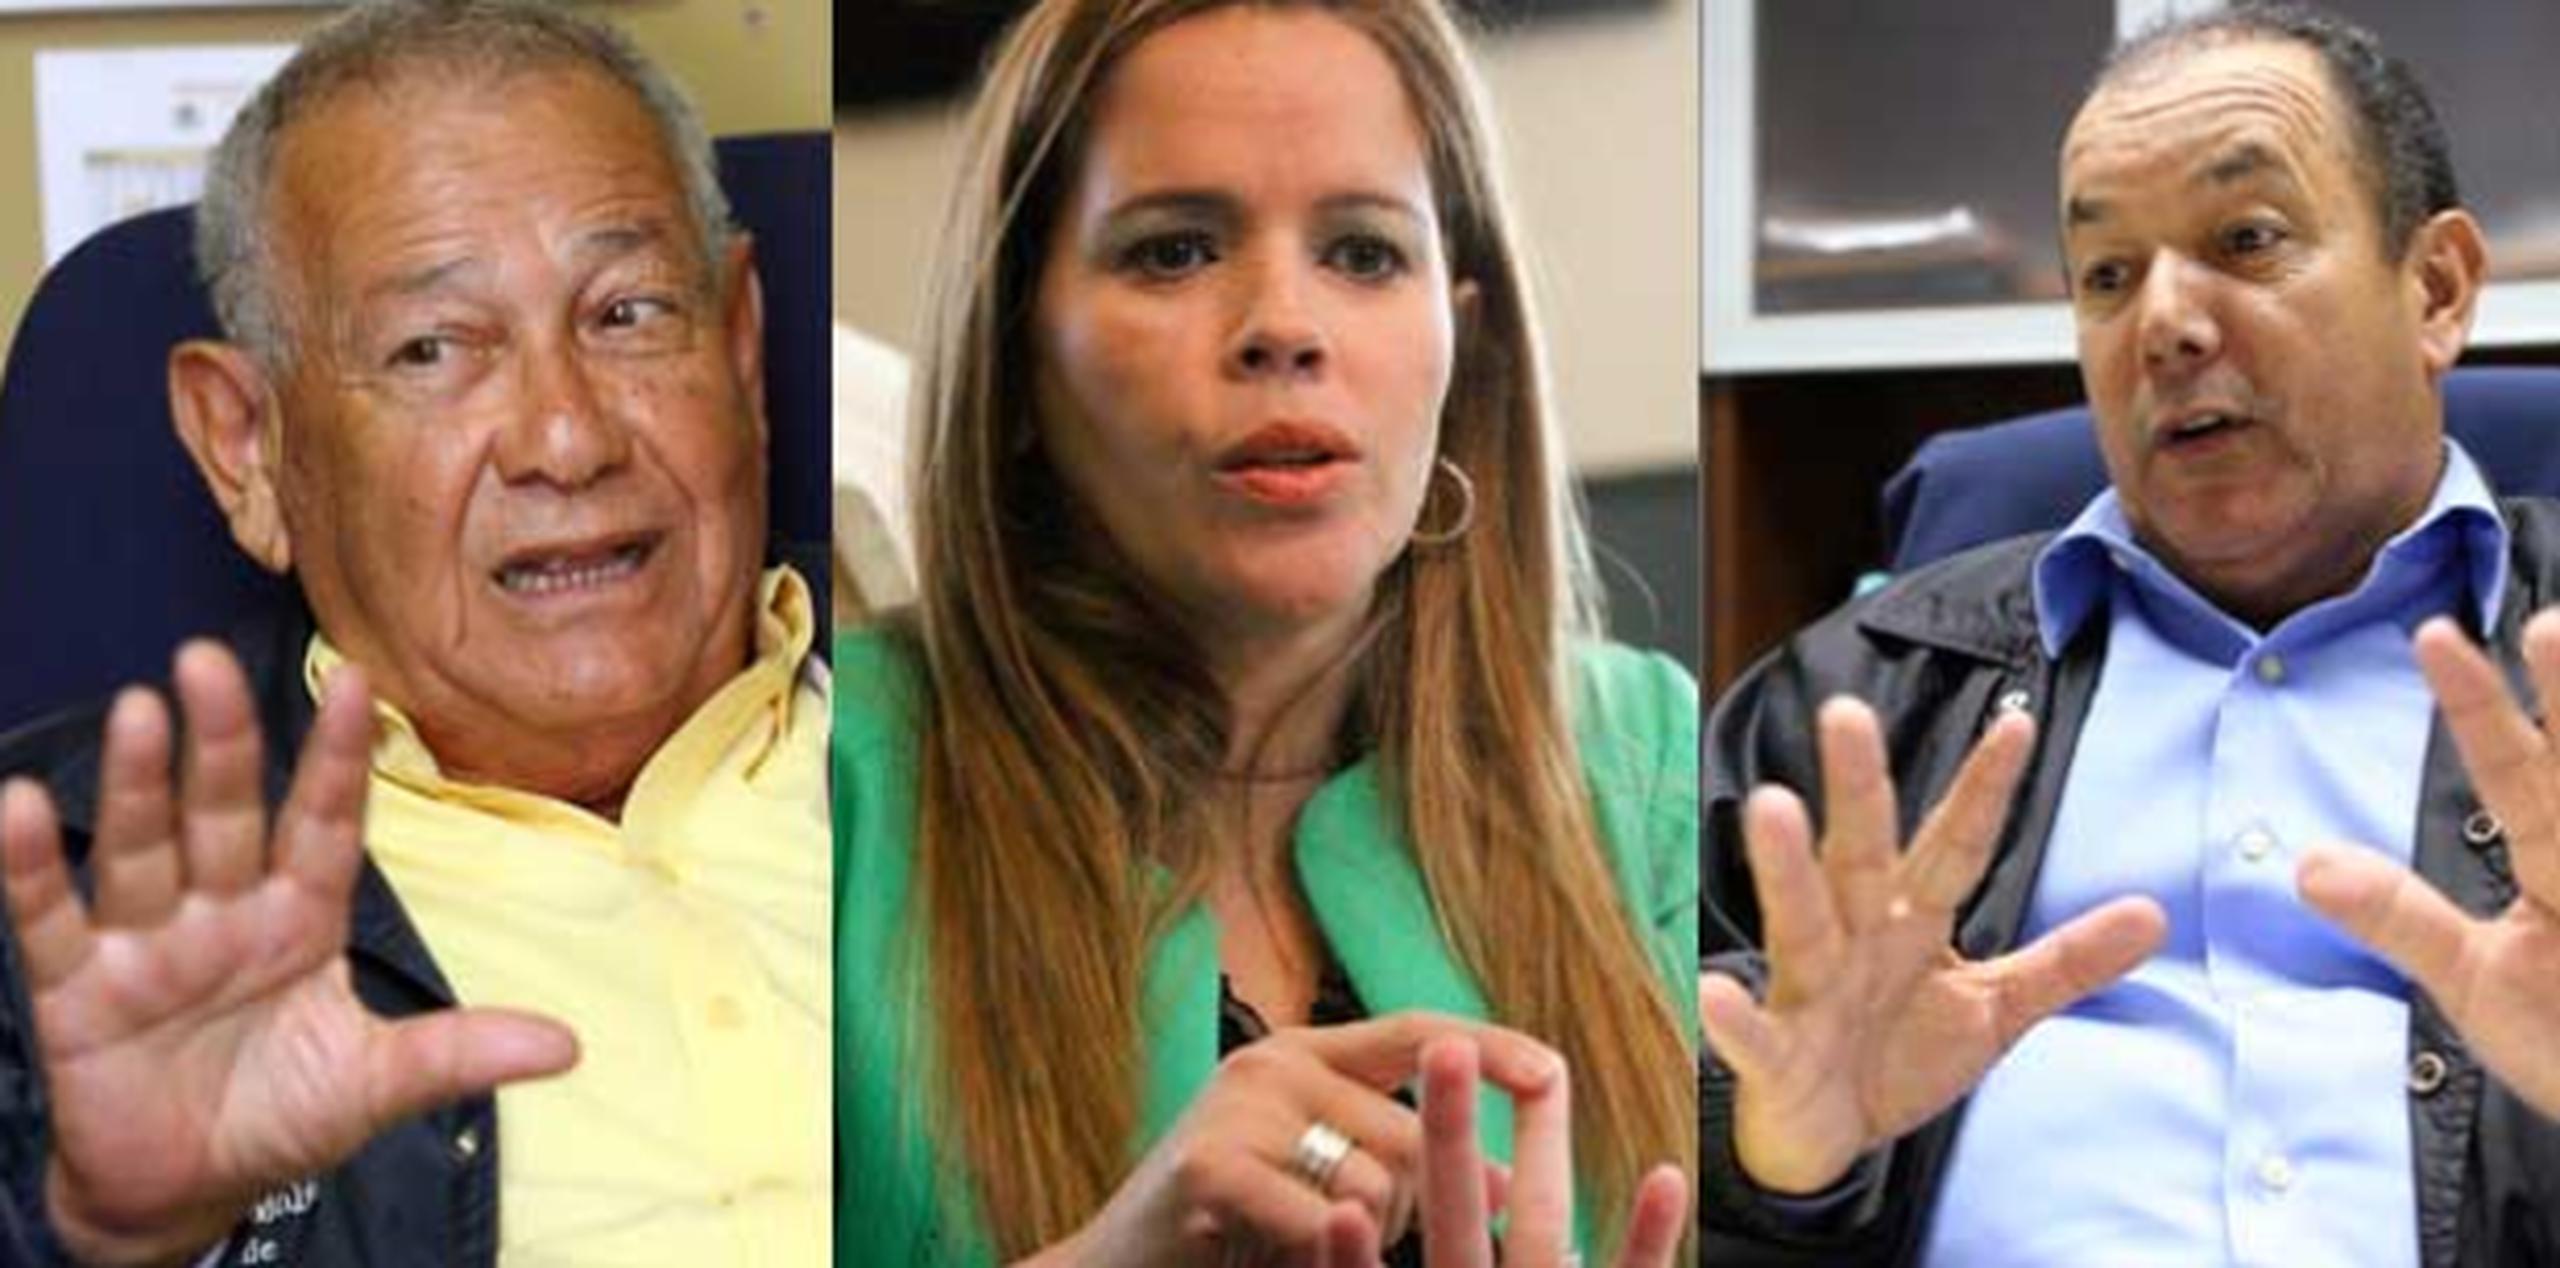 Los alcaldes demandados son Isabelo Molina, Lorna Soto y Gilberto Pérez Valentín. (Archivo)